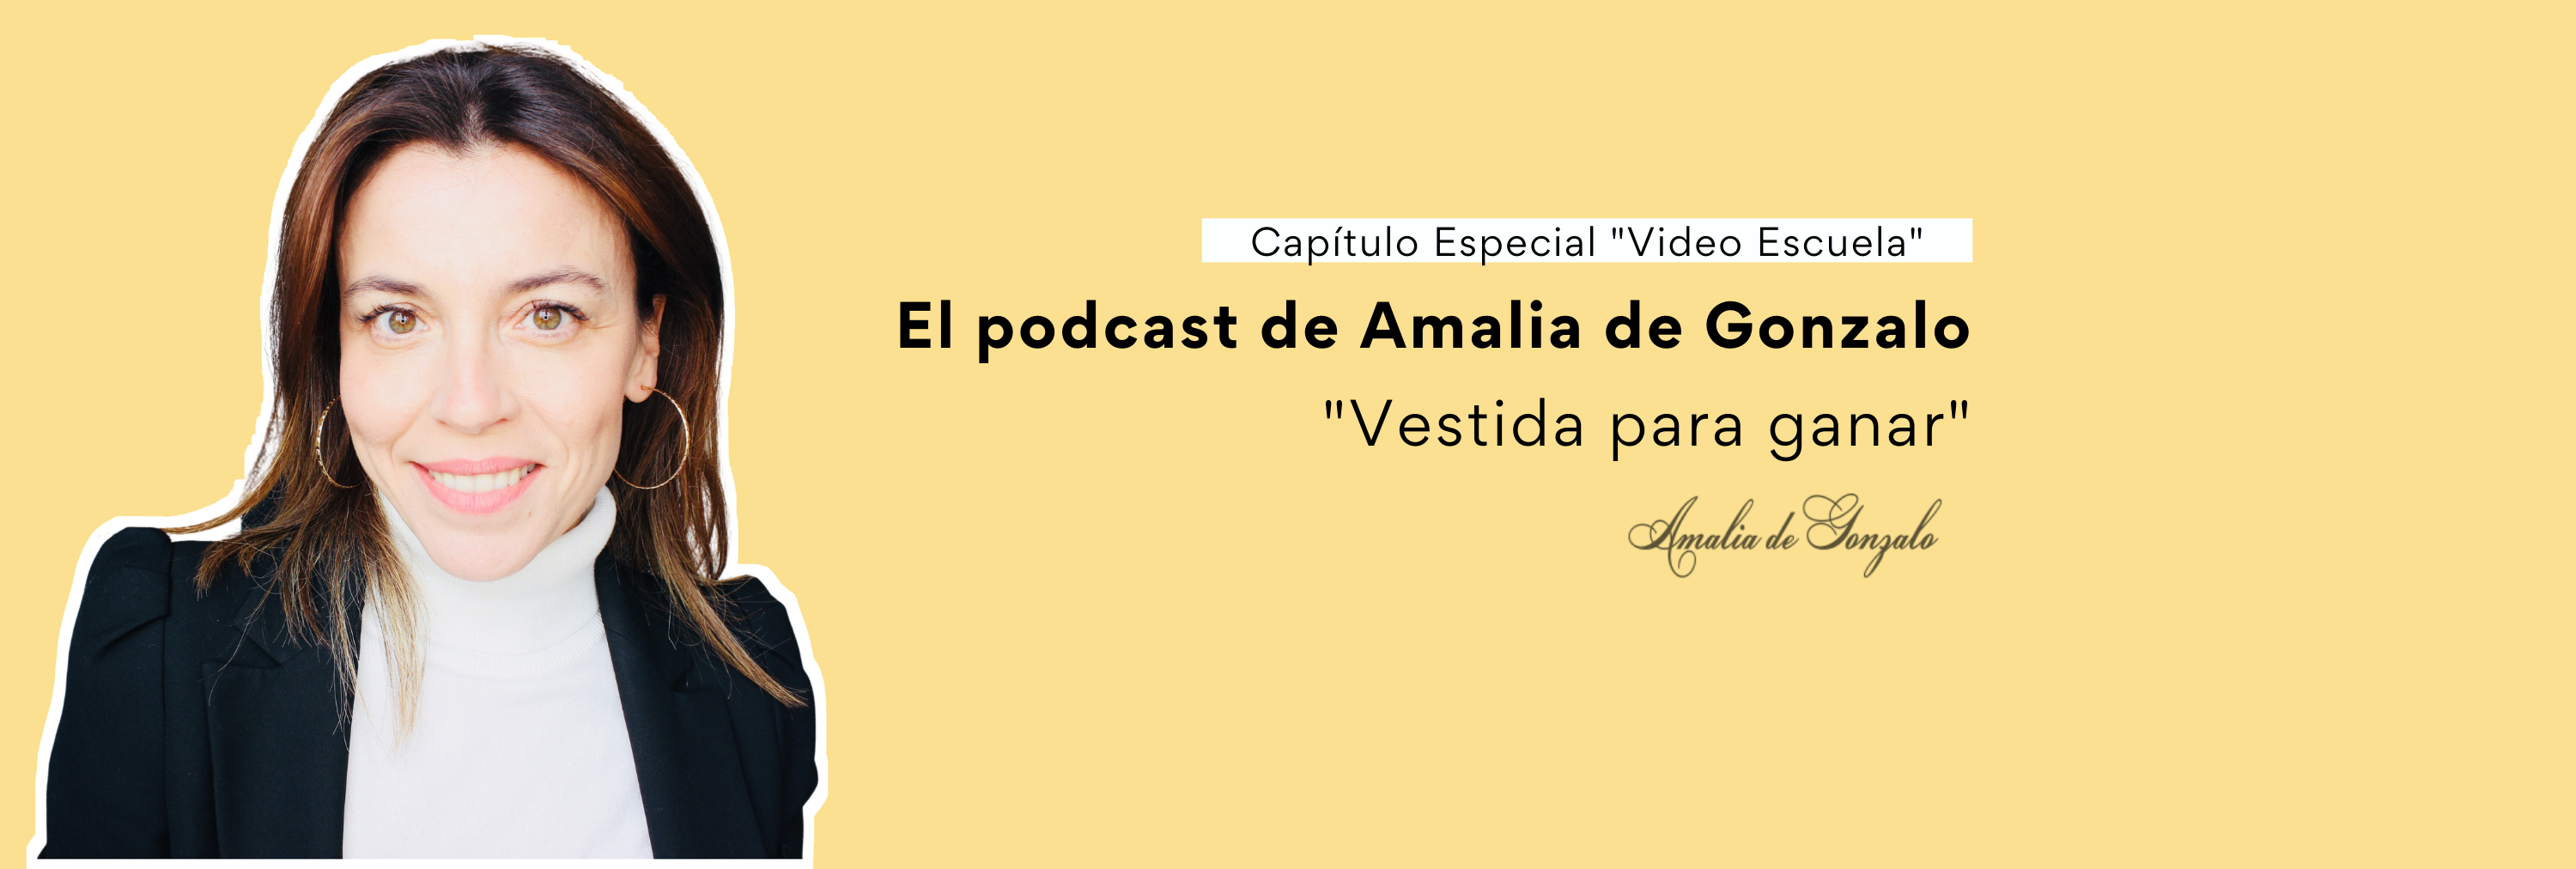 El podcast de Amalia de Gonzalo